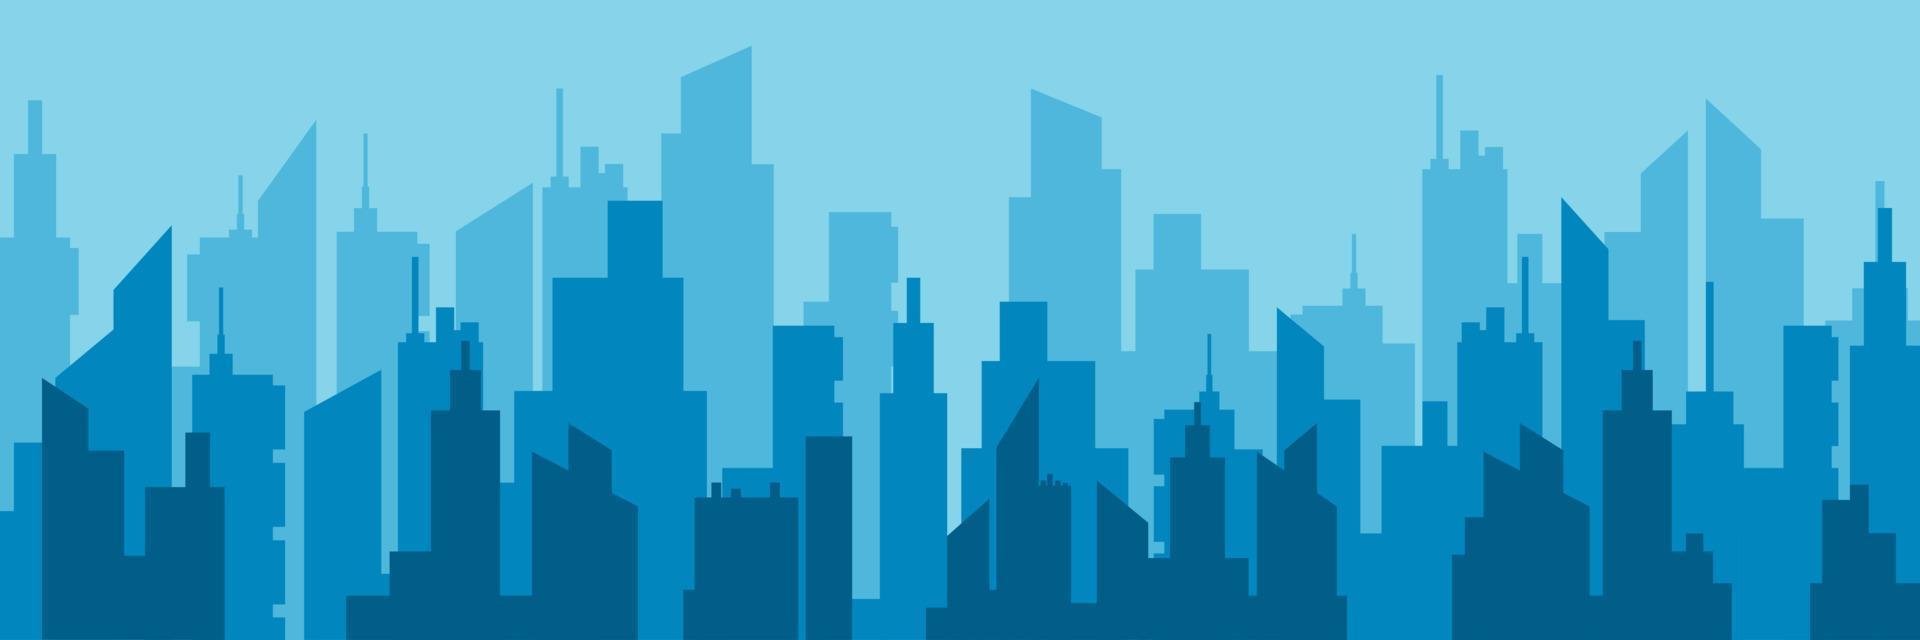 ilustración plana de vector de horizonte de ciudad horizontal. paisaje urbano de arquitectura urbana con alto diseño gráfico de construcción de edificios modernos. panorama del centro de rascacielos